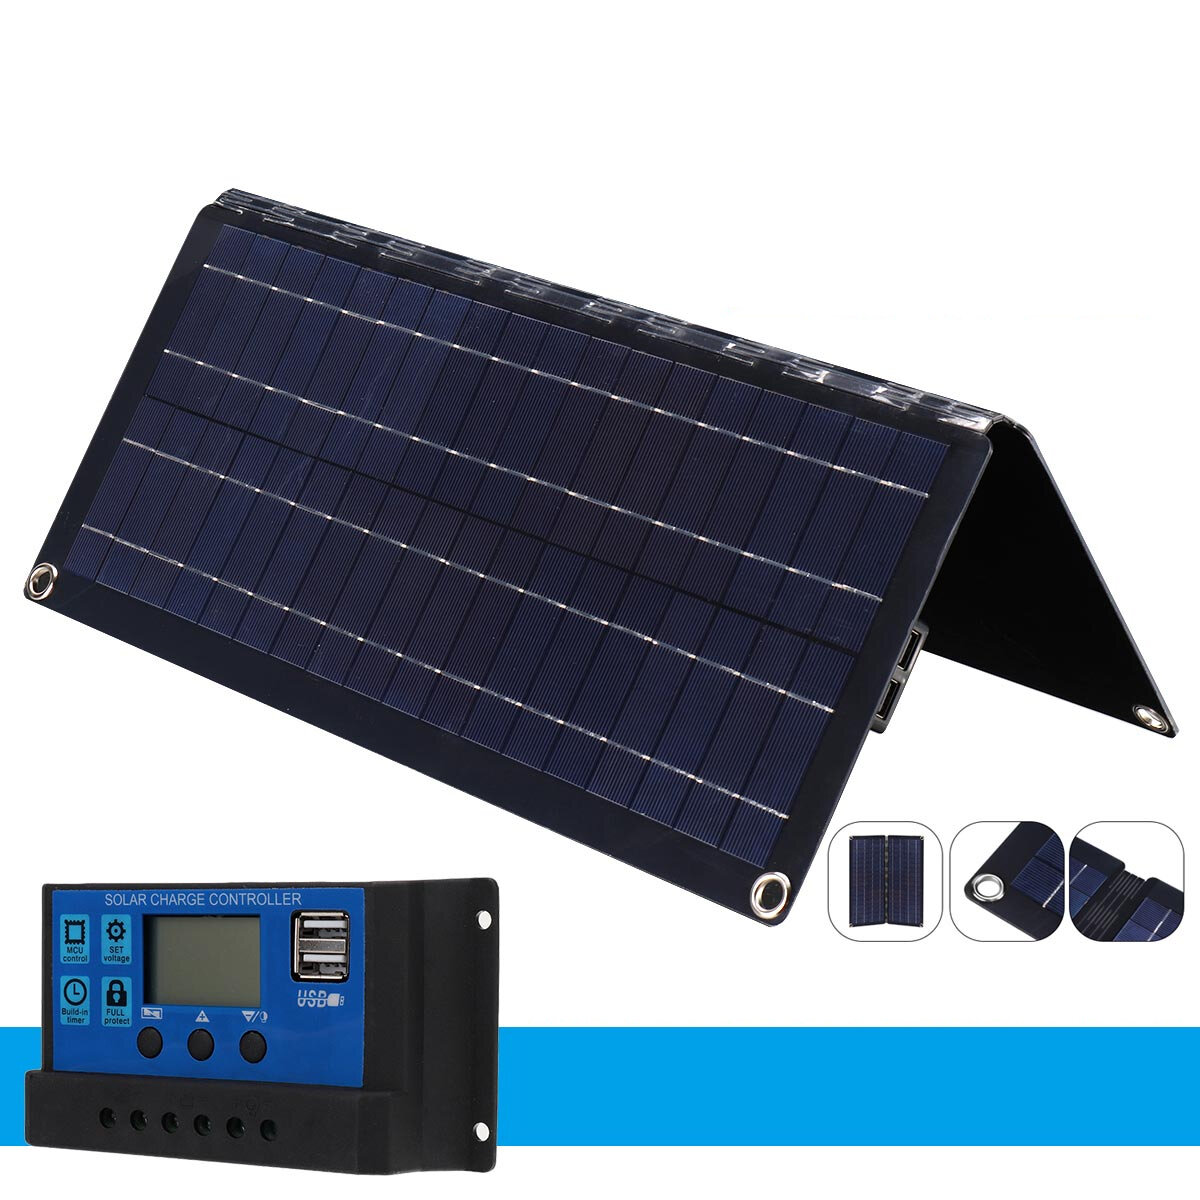 20W Monokrystaliczny panel słoneczny z kontrolerem, składany, ładowalny, przenośny do obozowania na zewnątrz i wspinaczki górskiej.